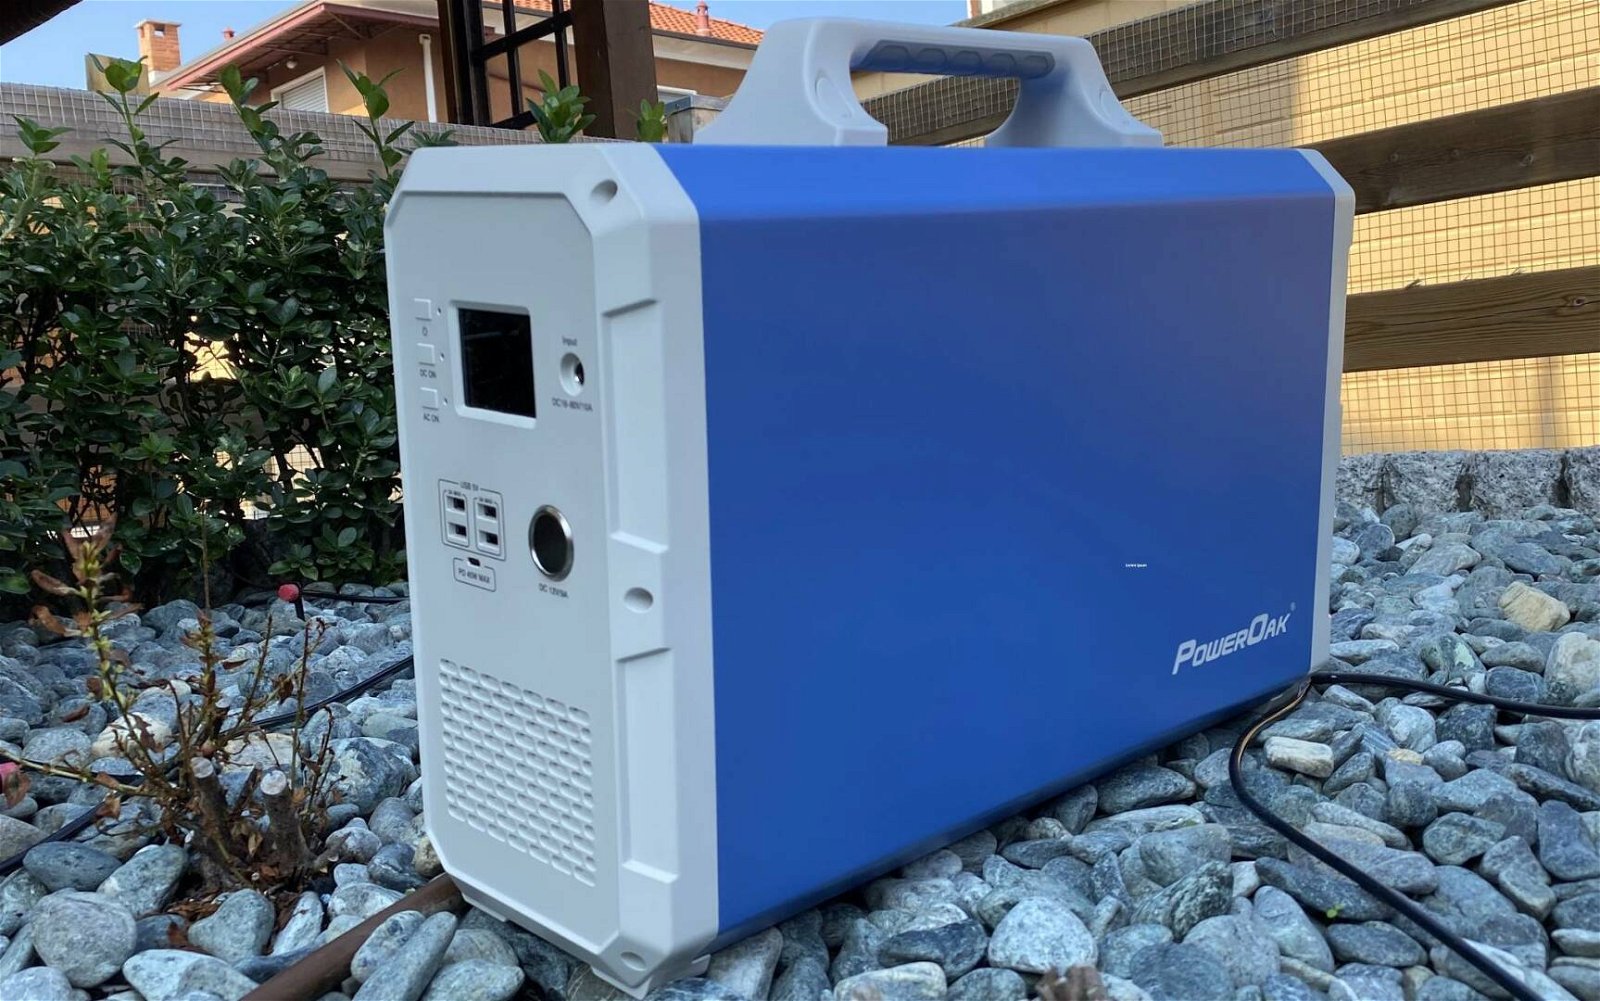 Immagine di Bluetti PowerOak EB240, generatore elettrico portatile da 2.4 kWh | Recensione